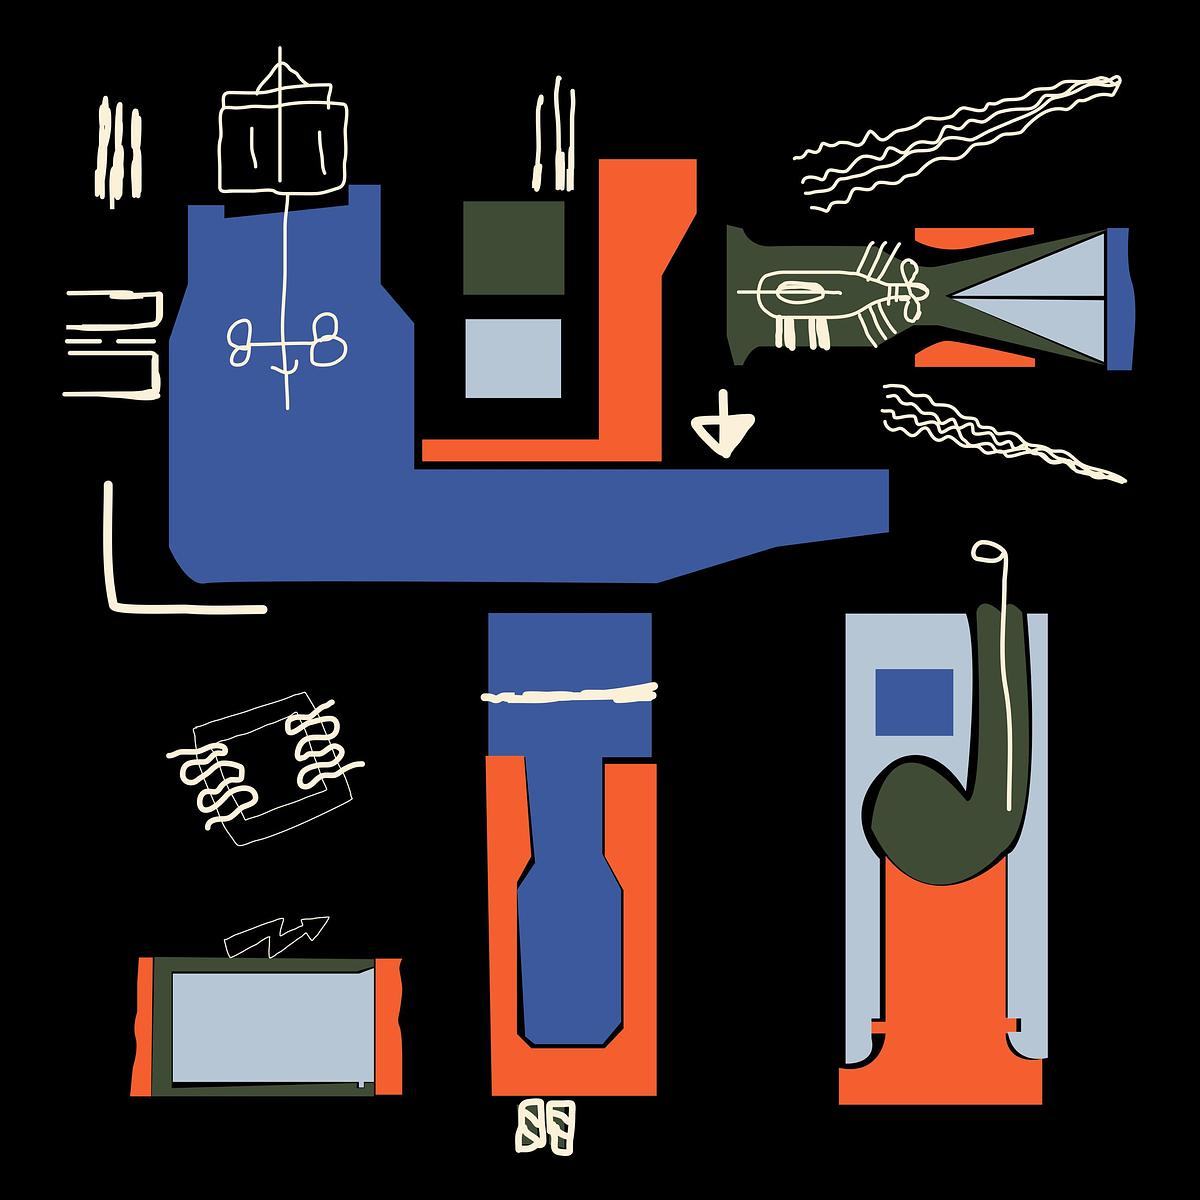 Титульное изображение для страницы события: Рисунок электрогенератора с турбиной синего, красного и серого цветов на черном фоне